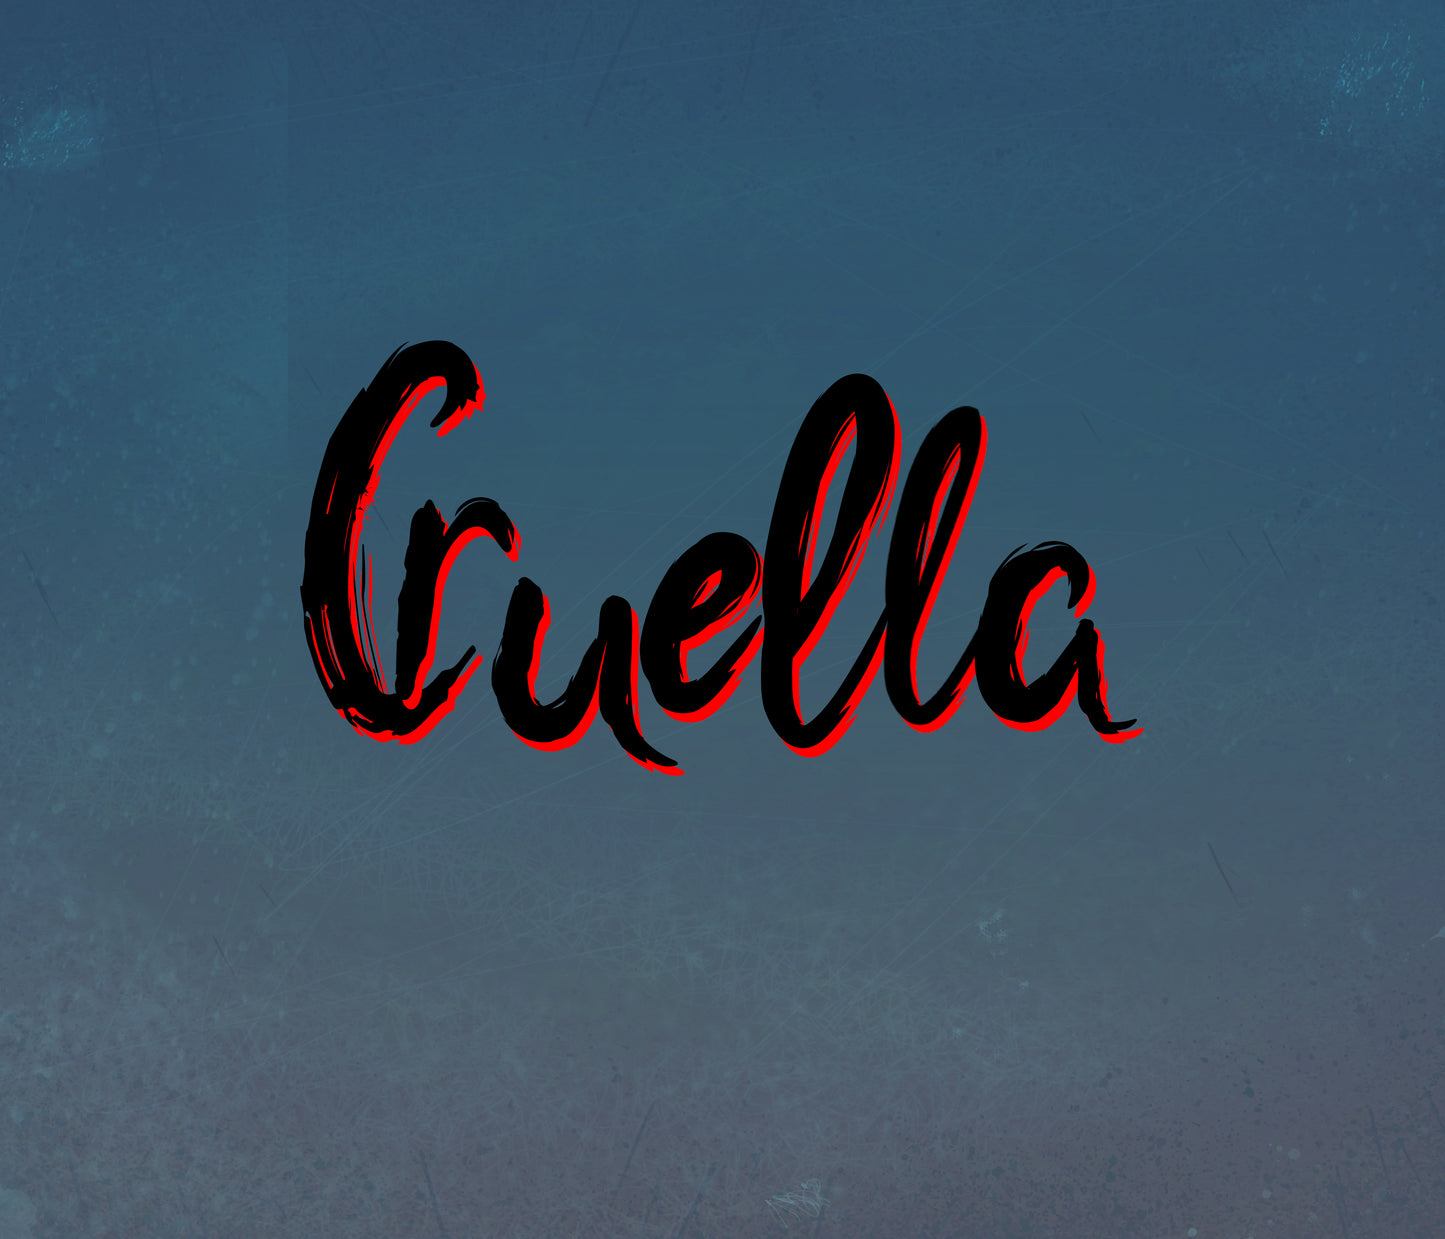 Cruella Font: A Font inspired by Cruella de Vil